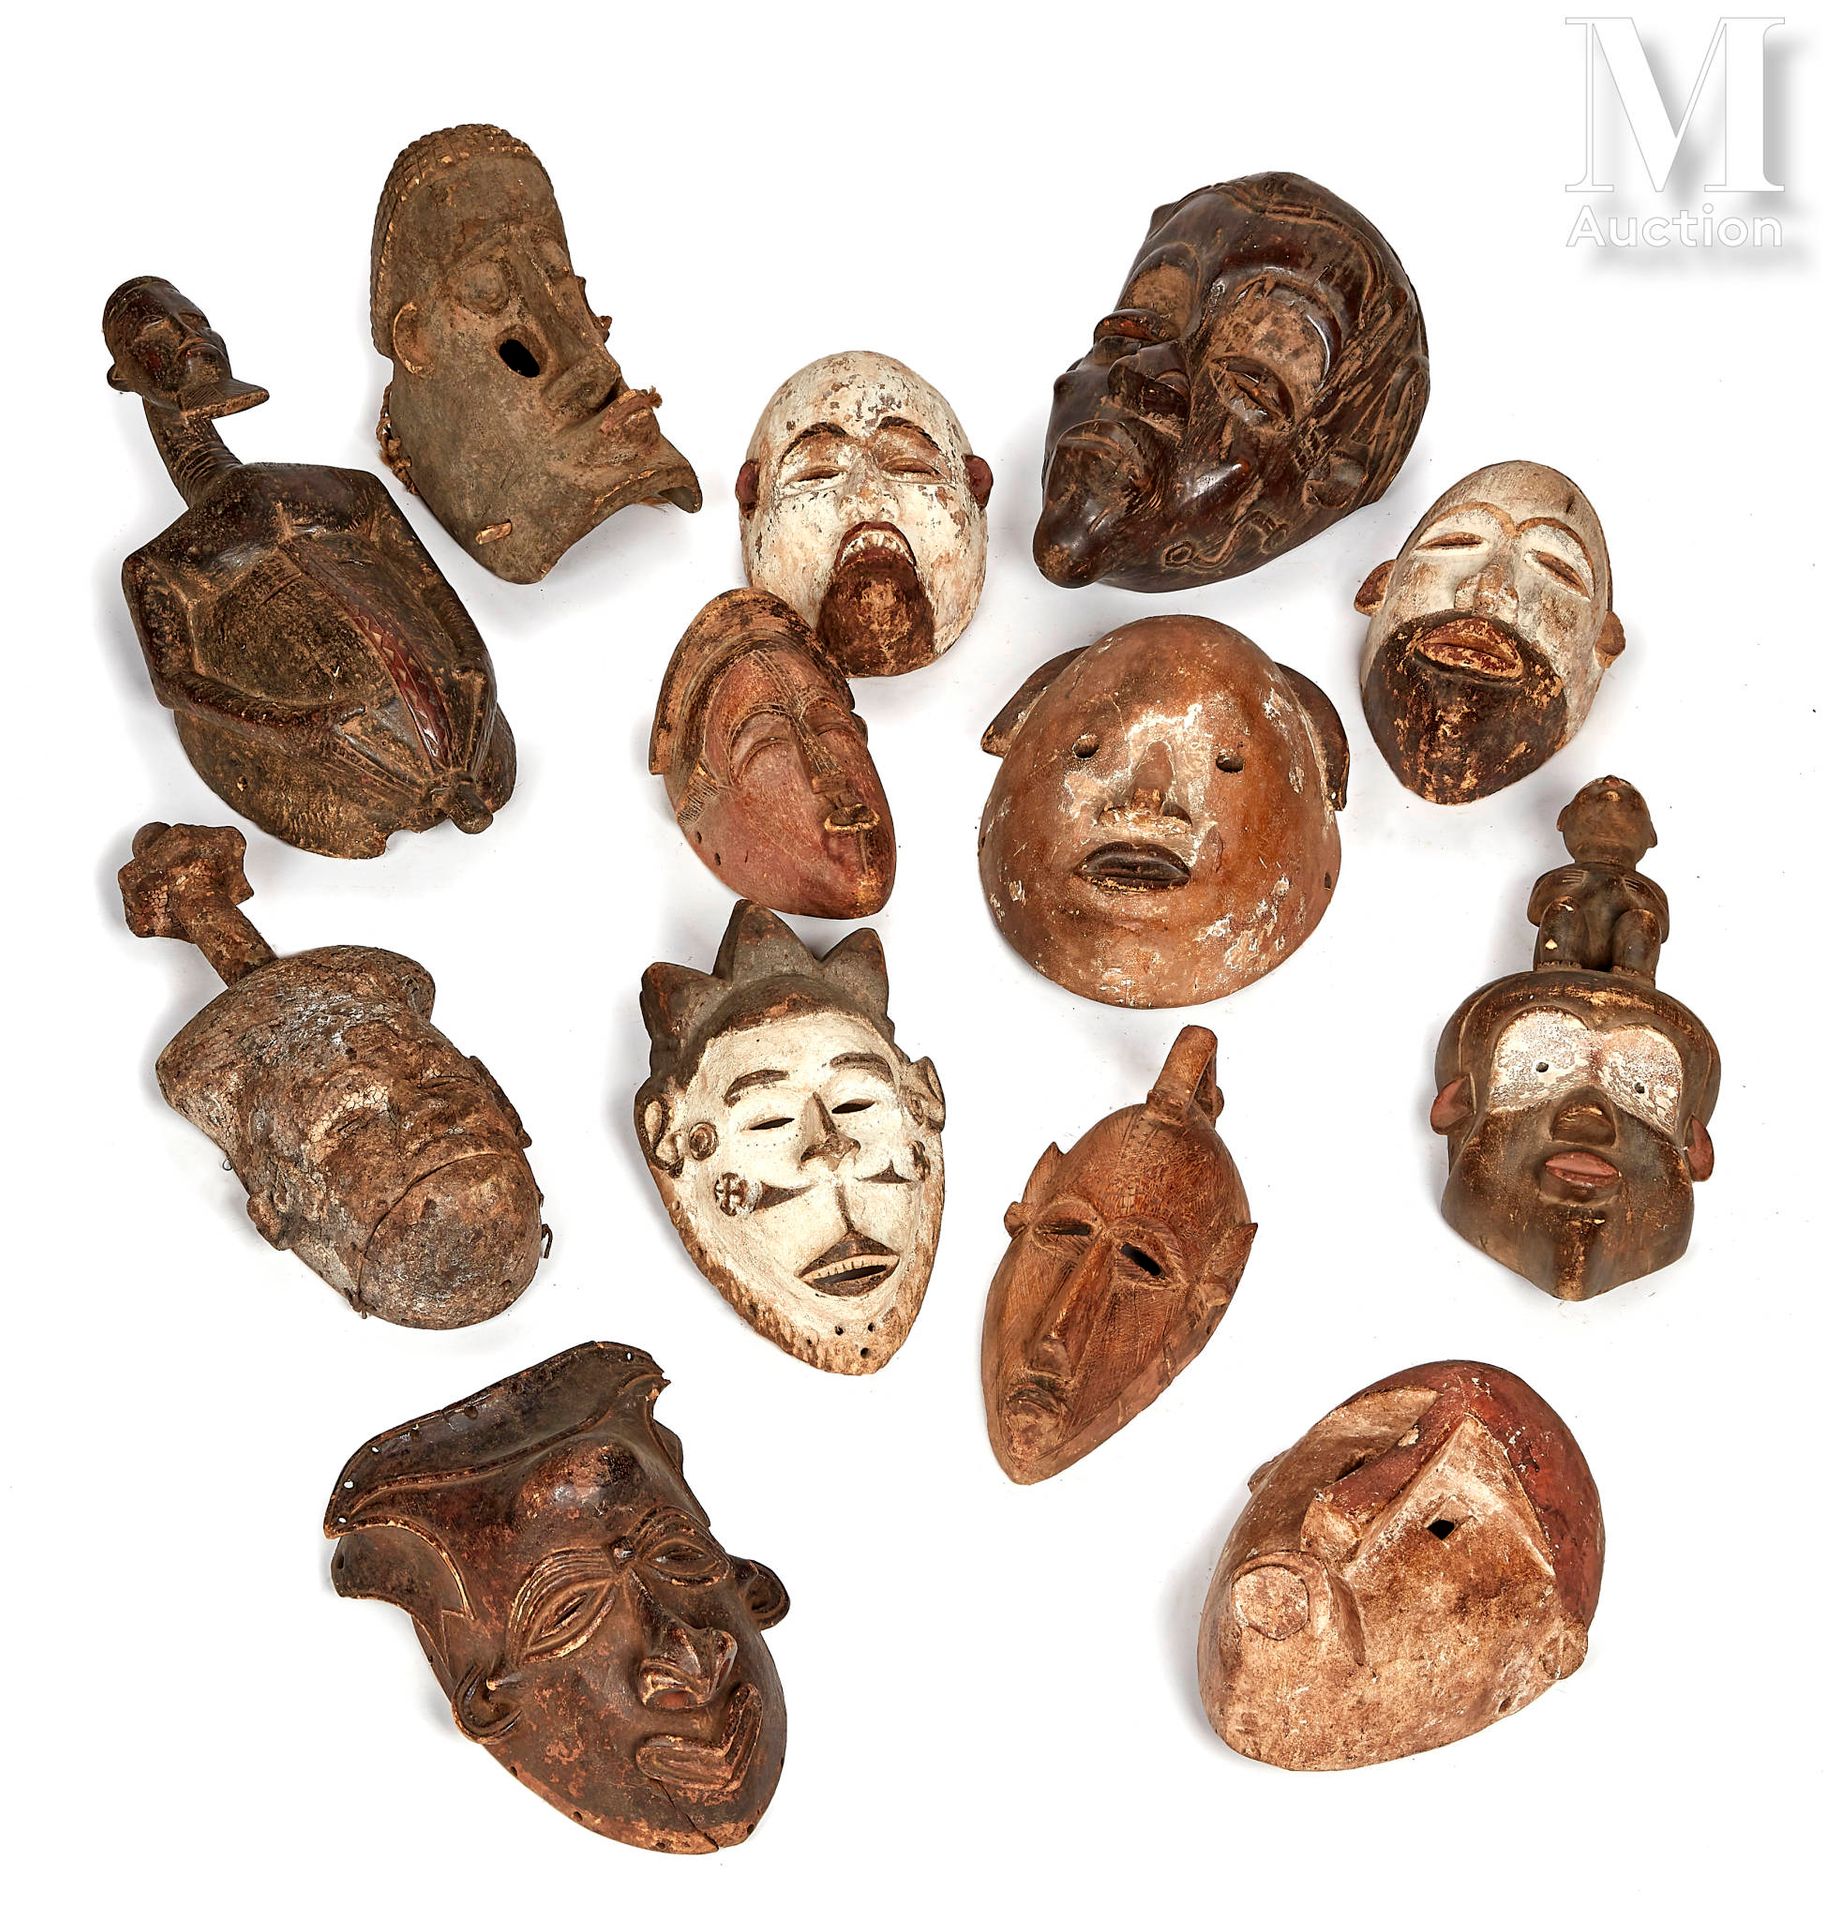 14 masques in legno
nello stile dell'Africa antica